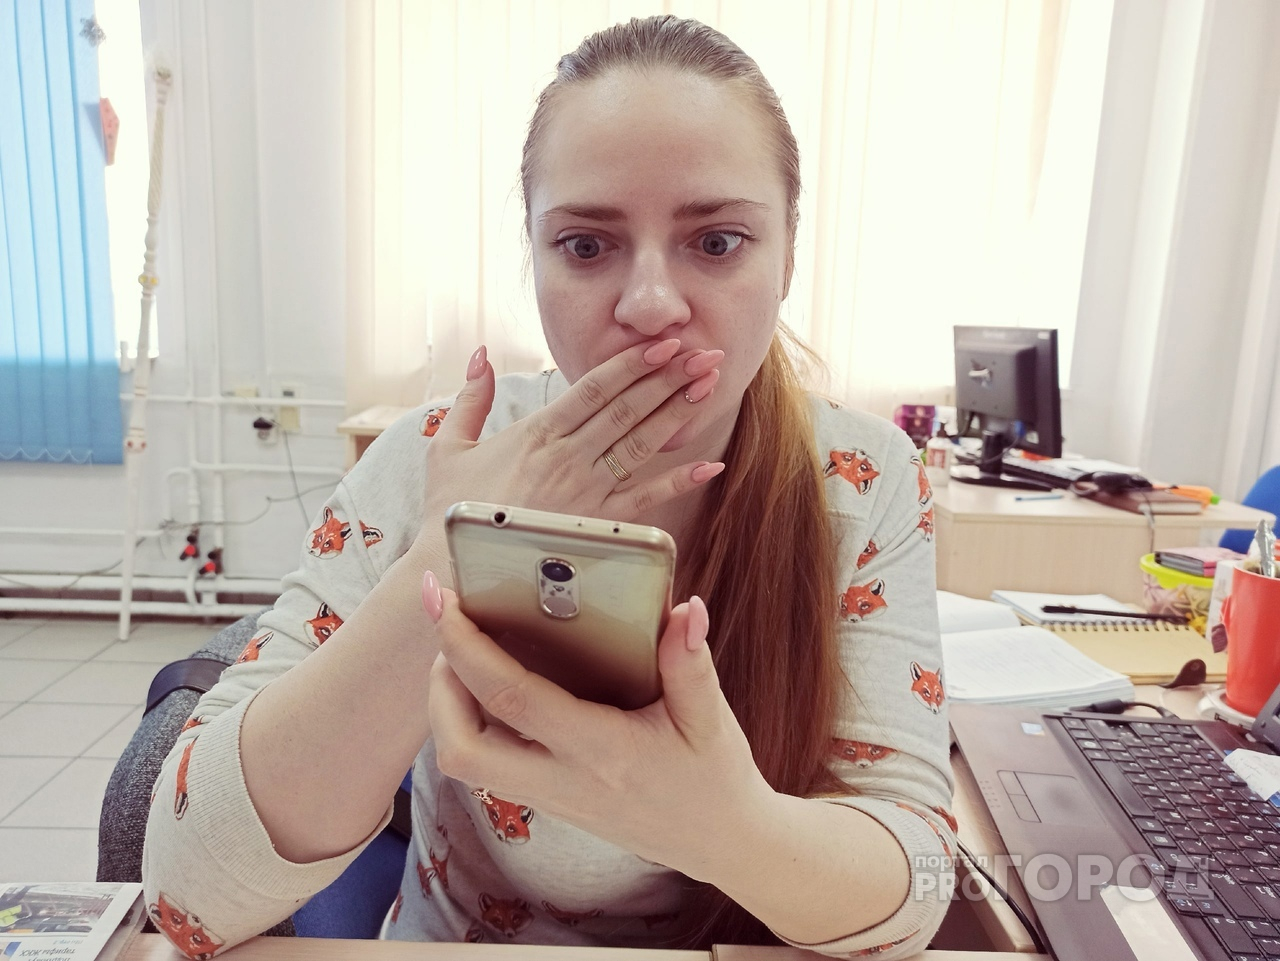 Сливали паспортные данные: в Ярославле будут судить сотрудников салона сотовой связи